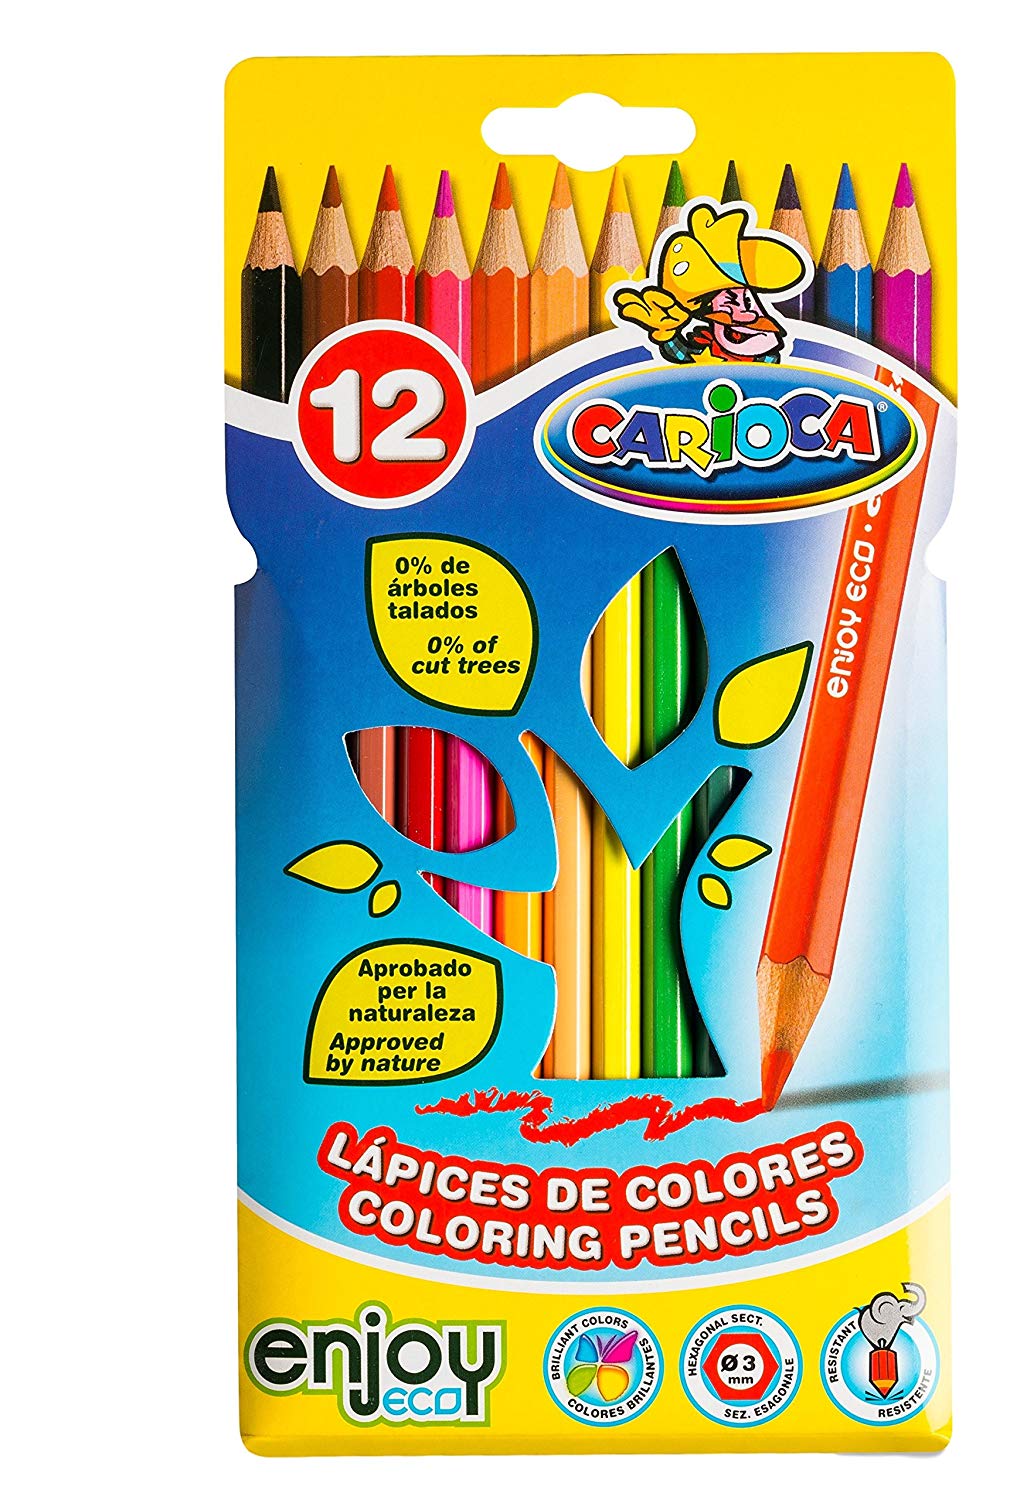 12 lápices de colores Carioca solo 1,7€